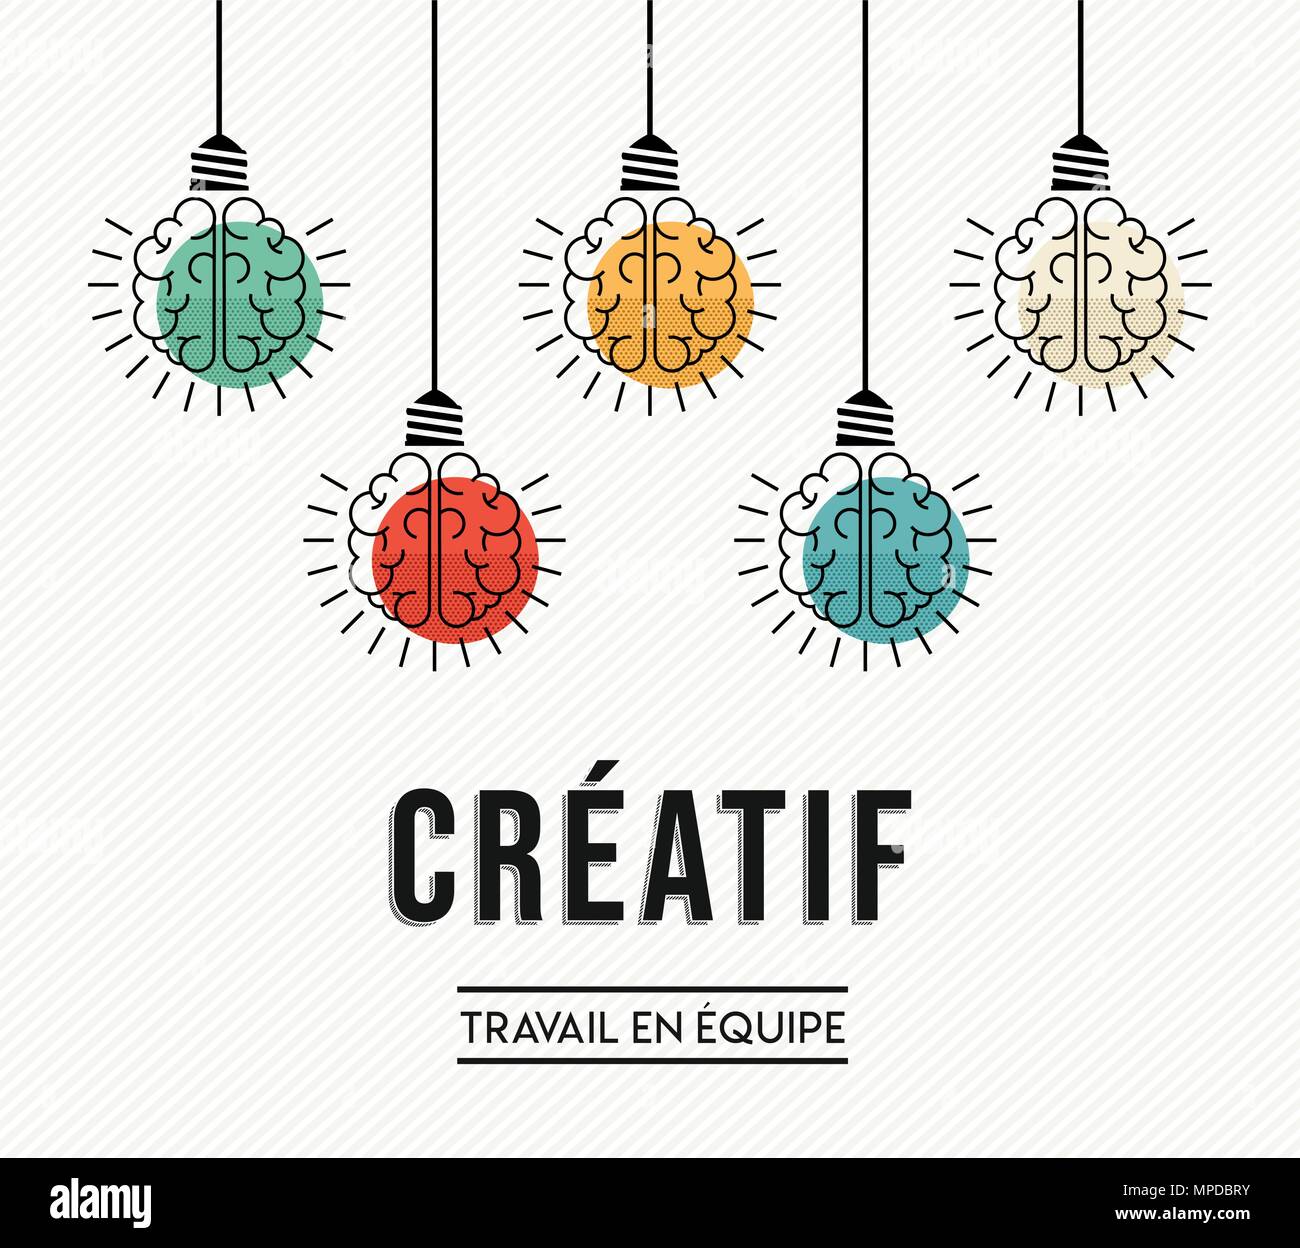 Lavoro di squadra creative design moderno in lingua francese con il cervello umano come colorata luce lampada, la creatività imprenditoriale concetto. EPS10 vettore. Illustrazione Vettoriale